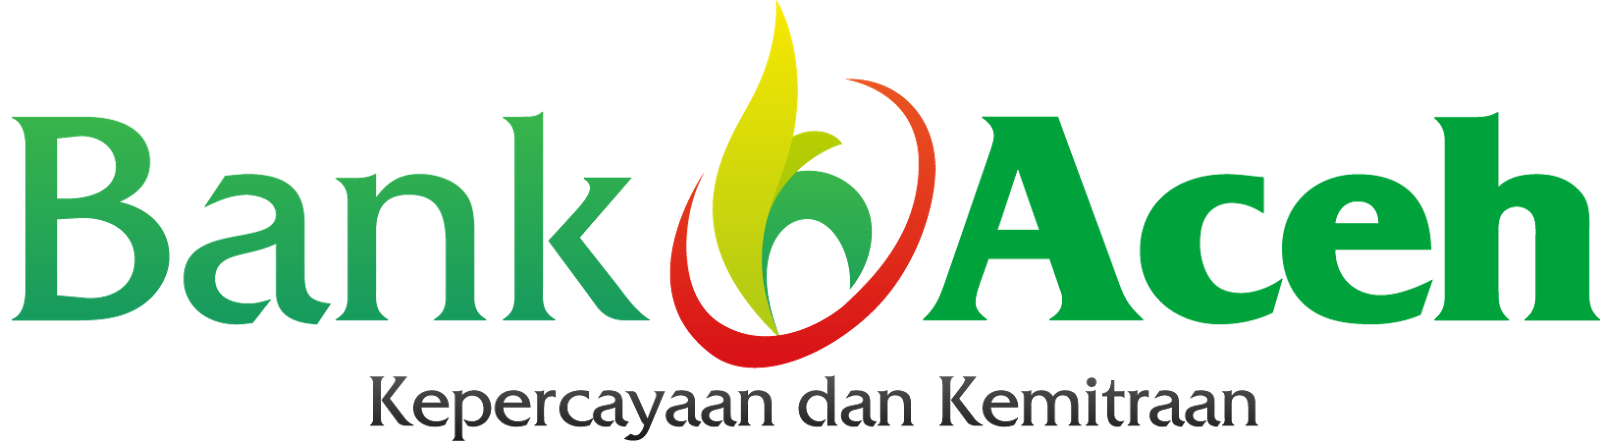 Bank Aceh Logo - 237 Design